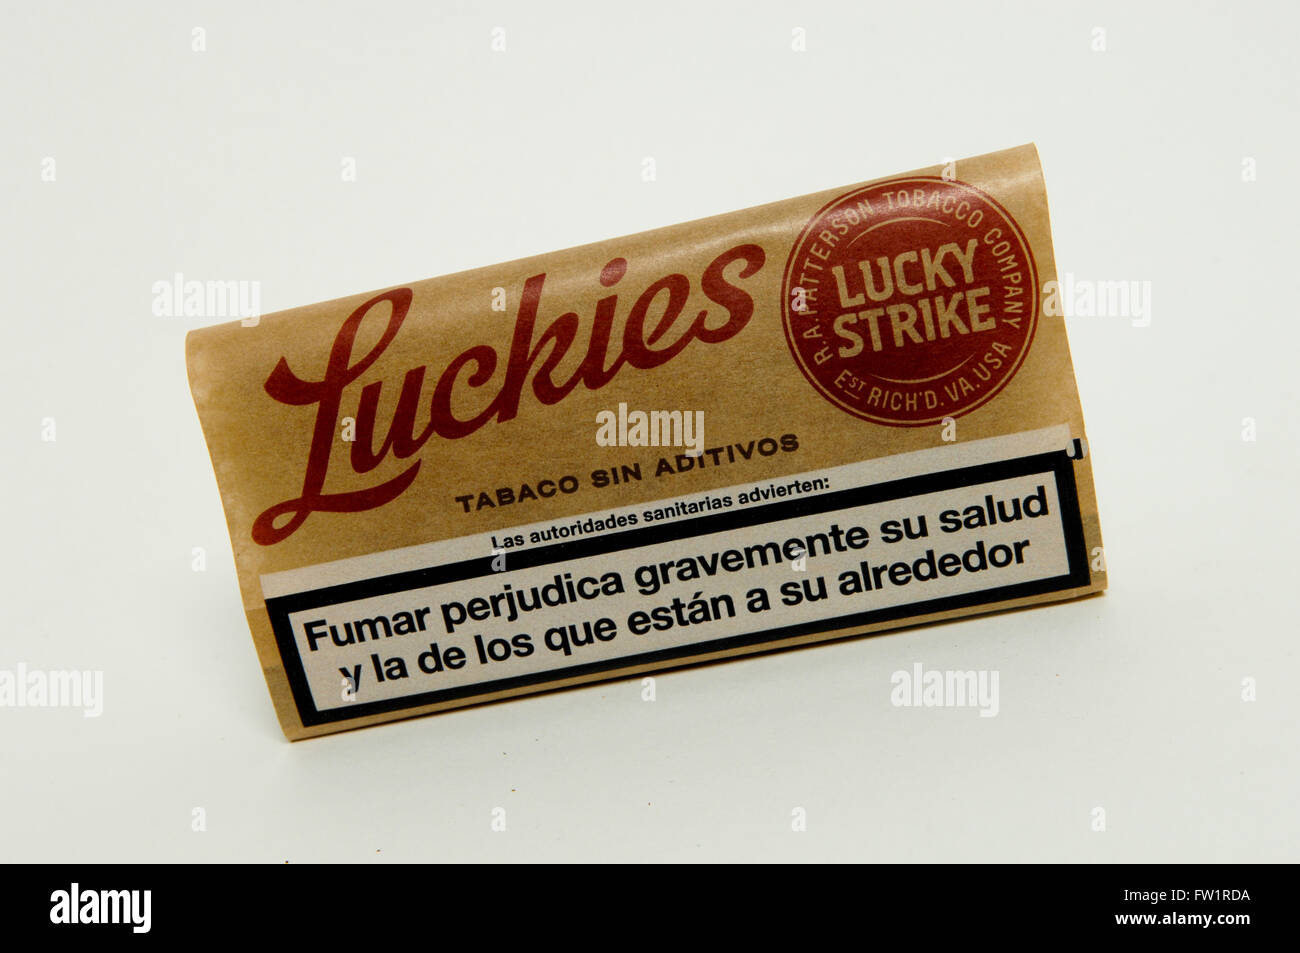 Lucky strike tobacco immagini e fotografie stock ad alta risoluzione - Alamy